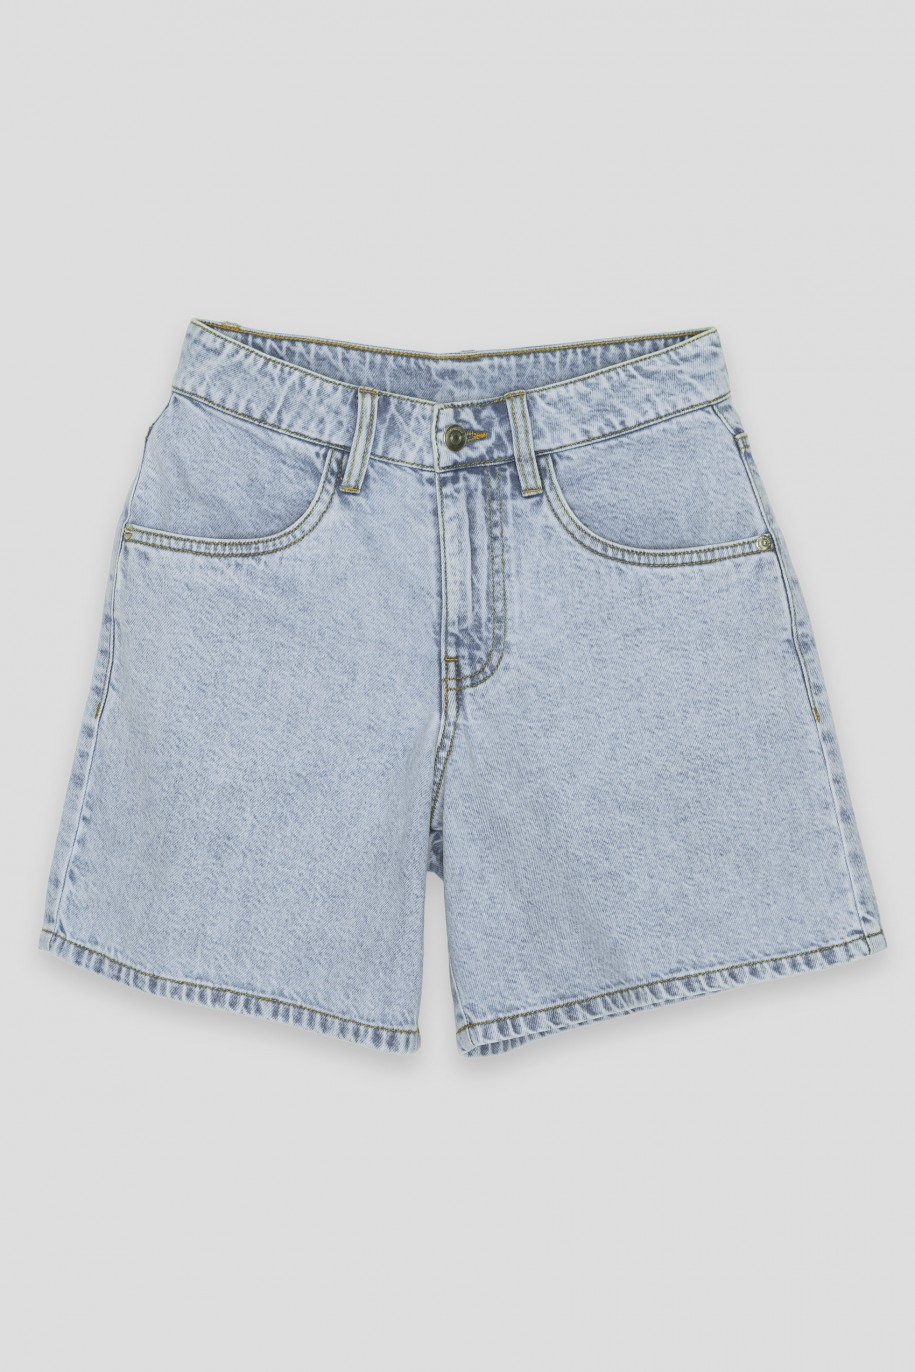 Niebieskie jeansowe proste krótkie spodenki - 42149